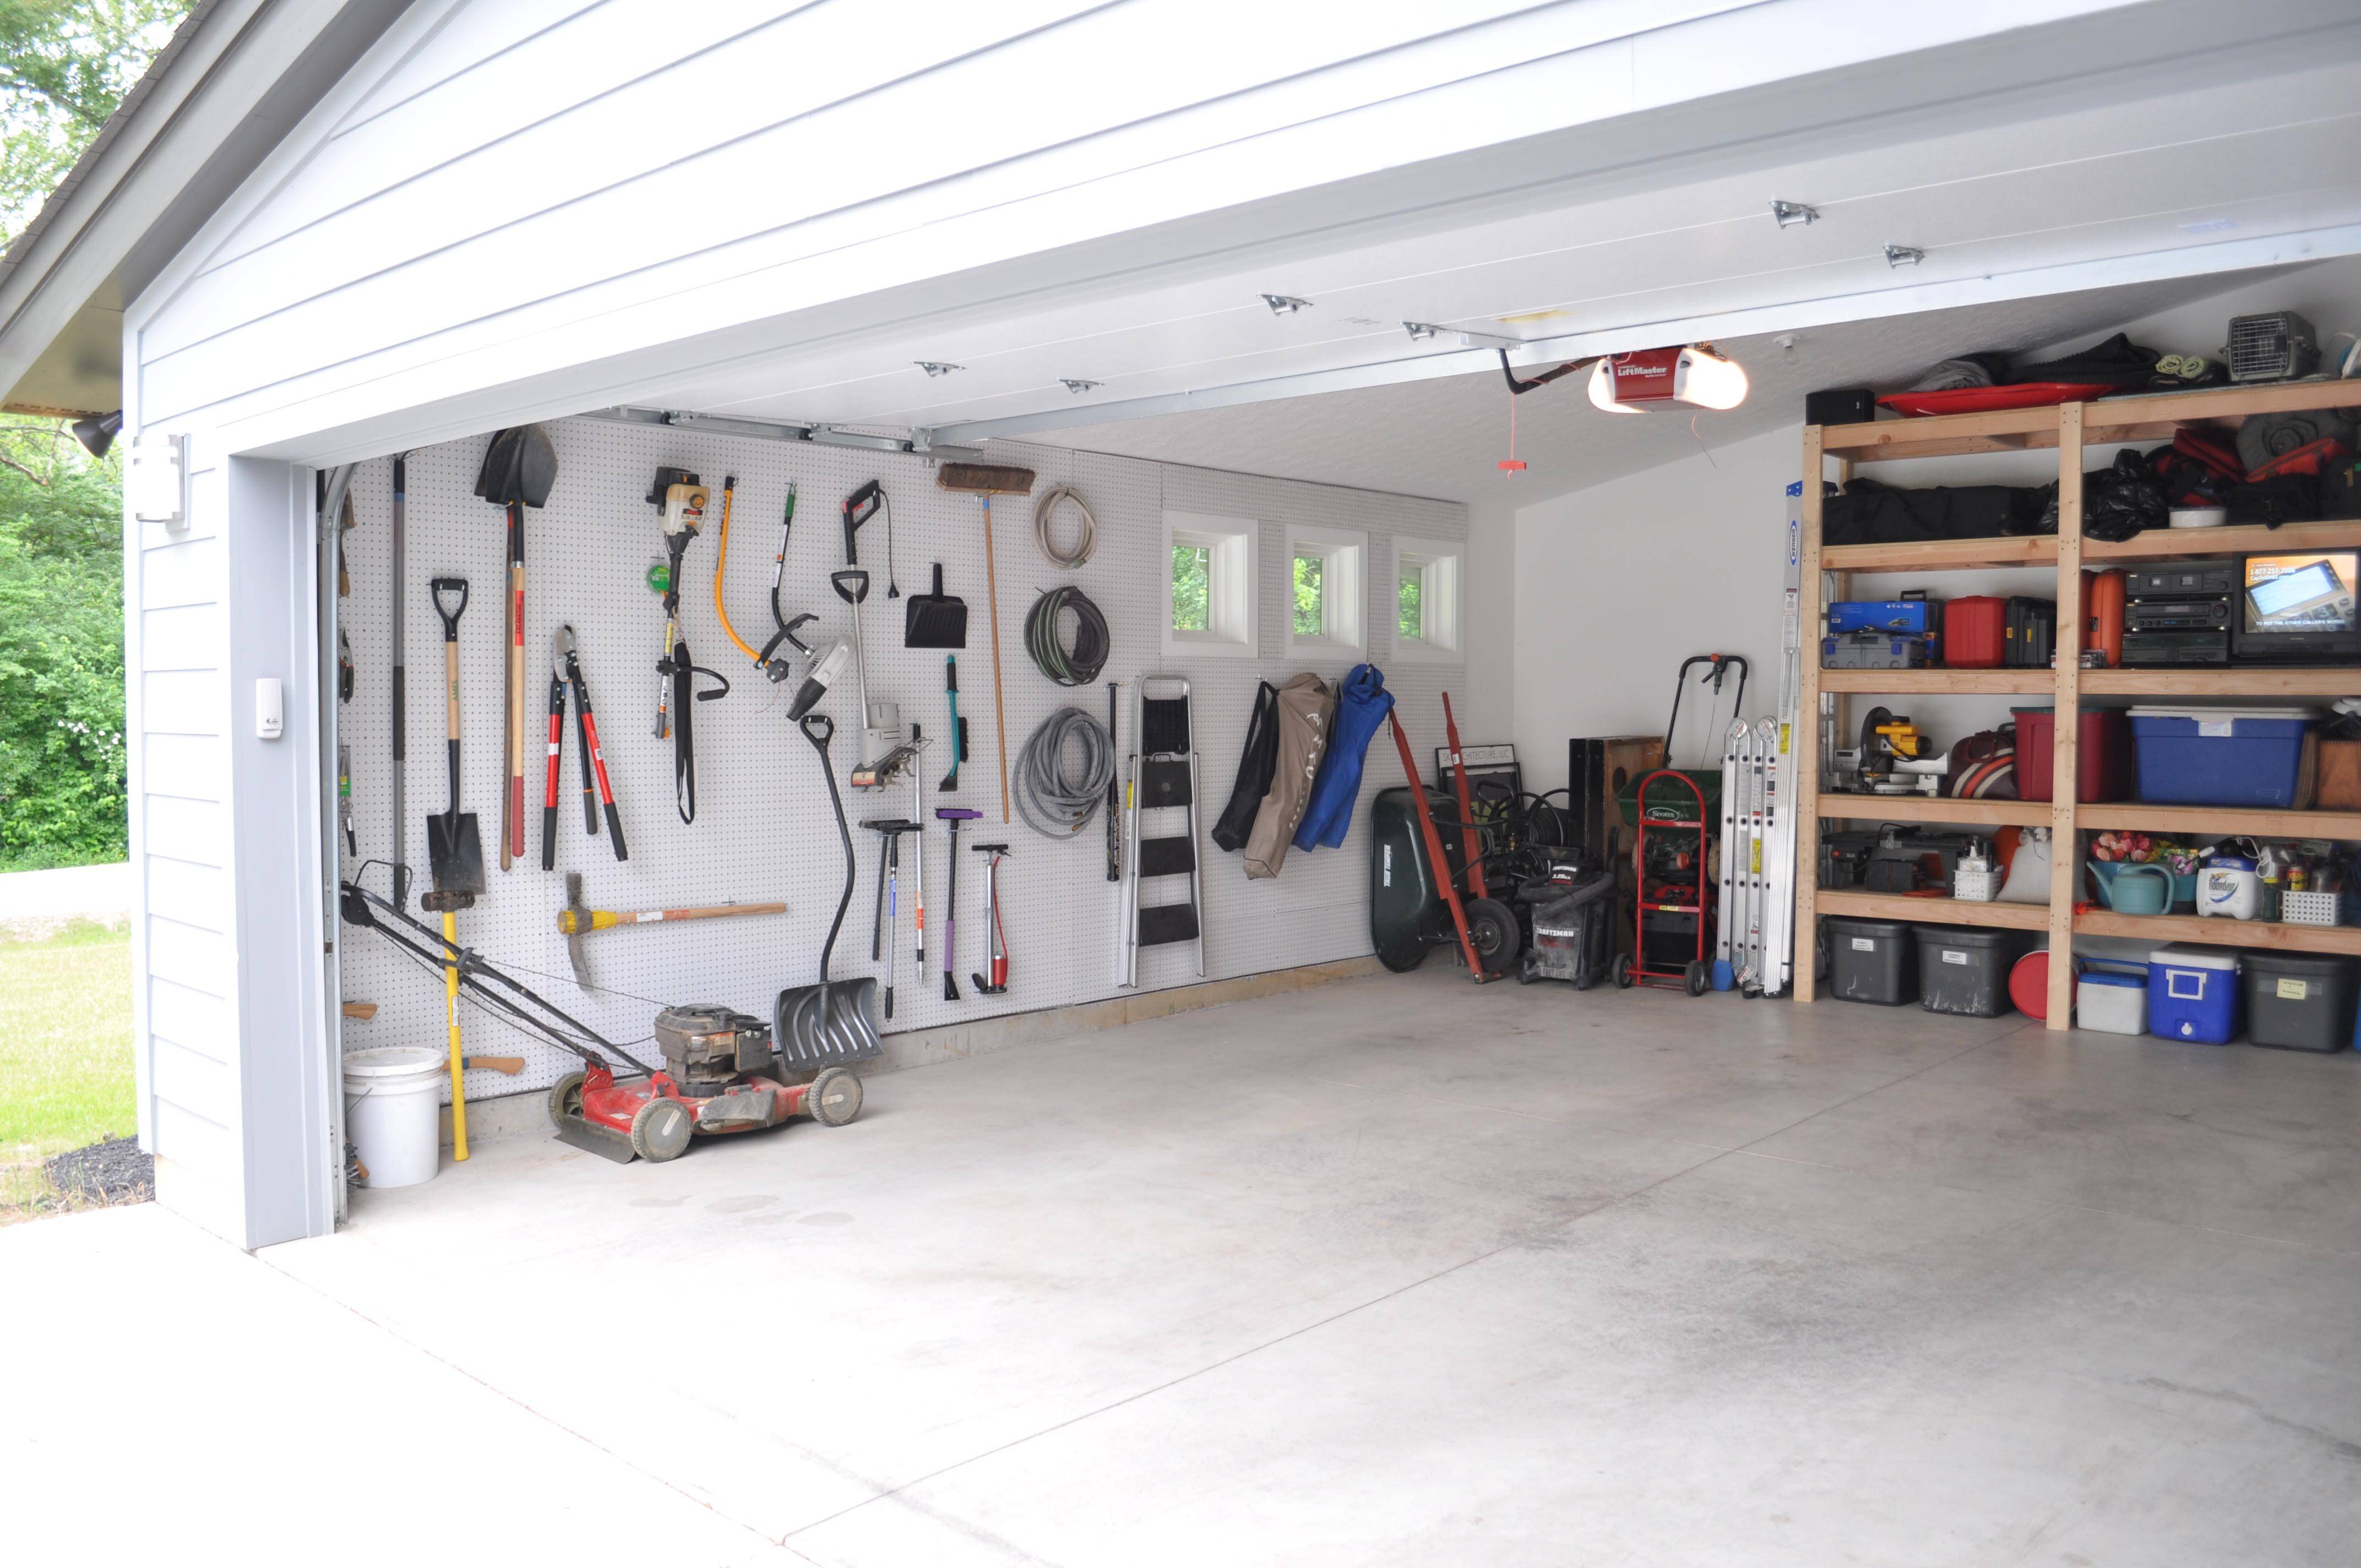 Garage o garaje cual es correcto